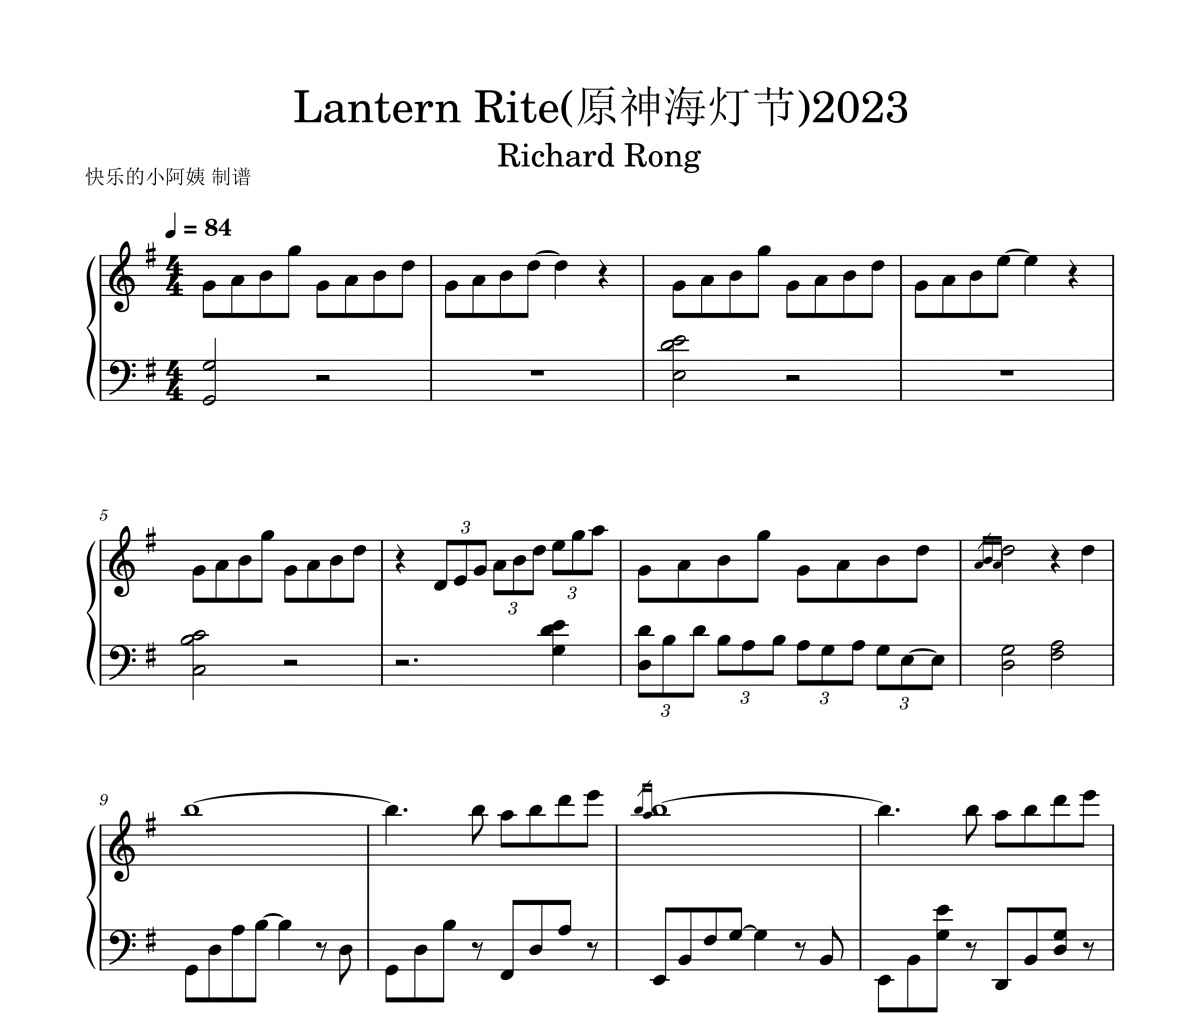 Lantern Rite(原神海灯节)2023钢琴谱 Richard Rong《Lantern Rite(原神海灯节)2